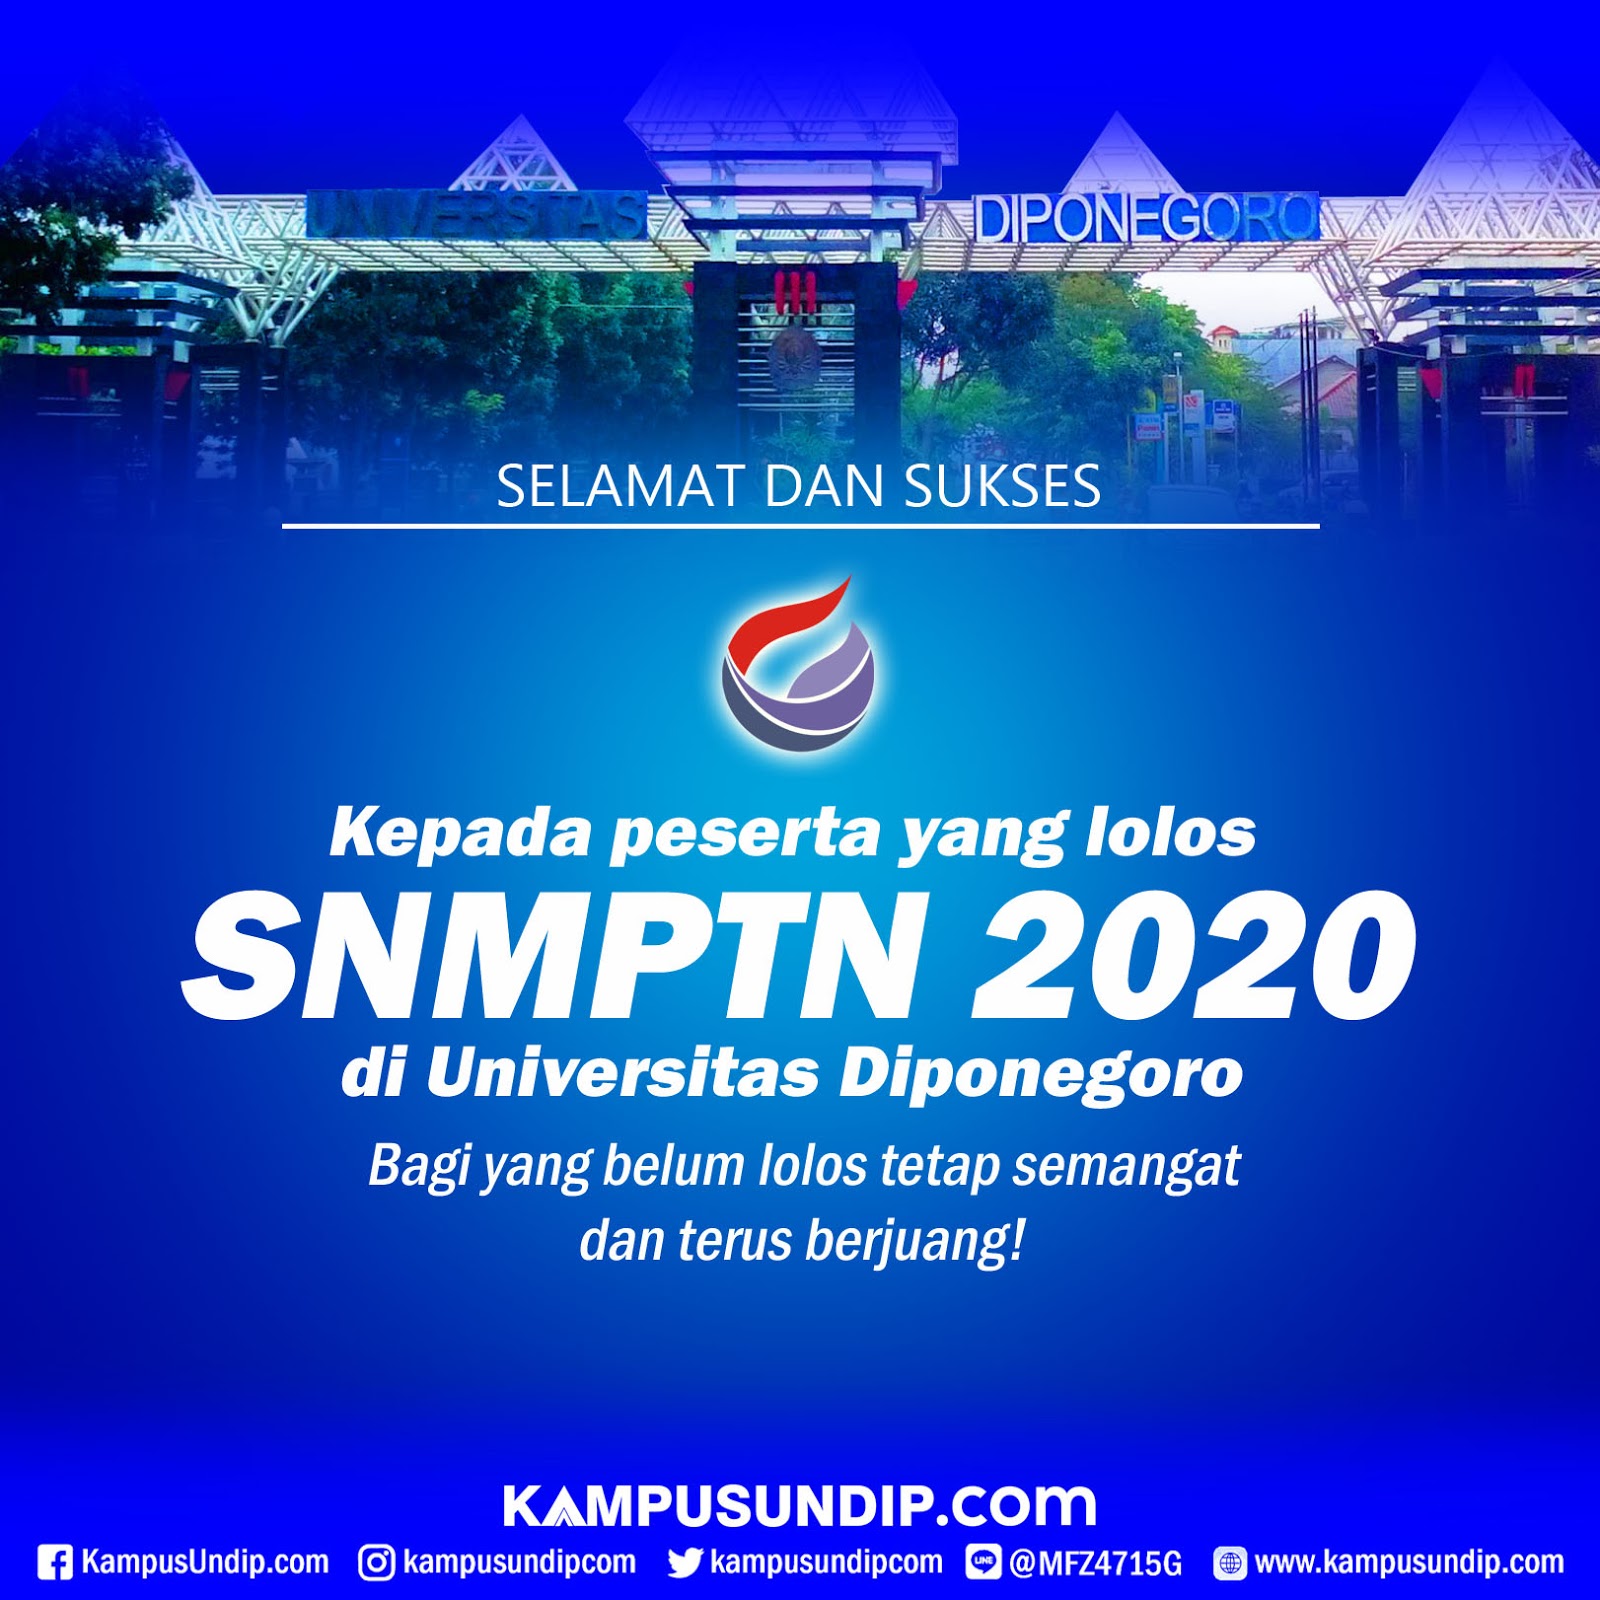 Snmptn 2020 Undip Kampus Terfavorit Ke 2 Di Indonesia Kampusundip Com